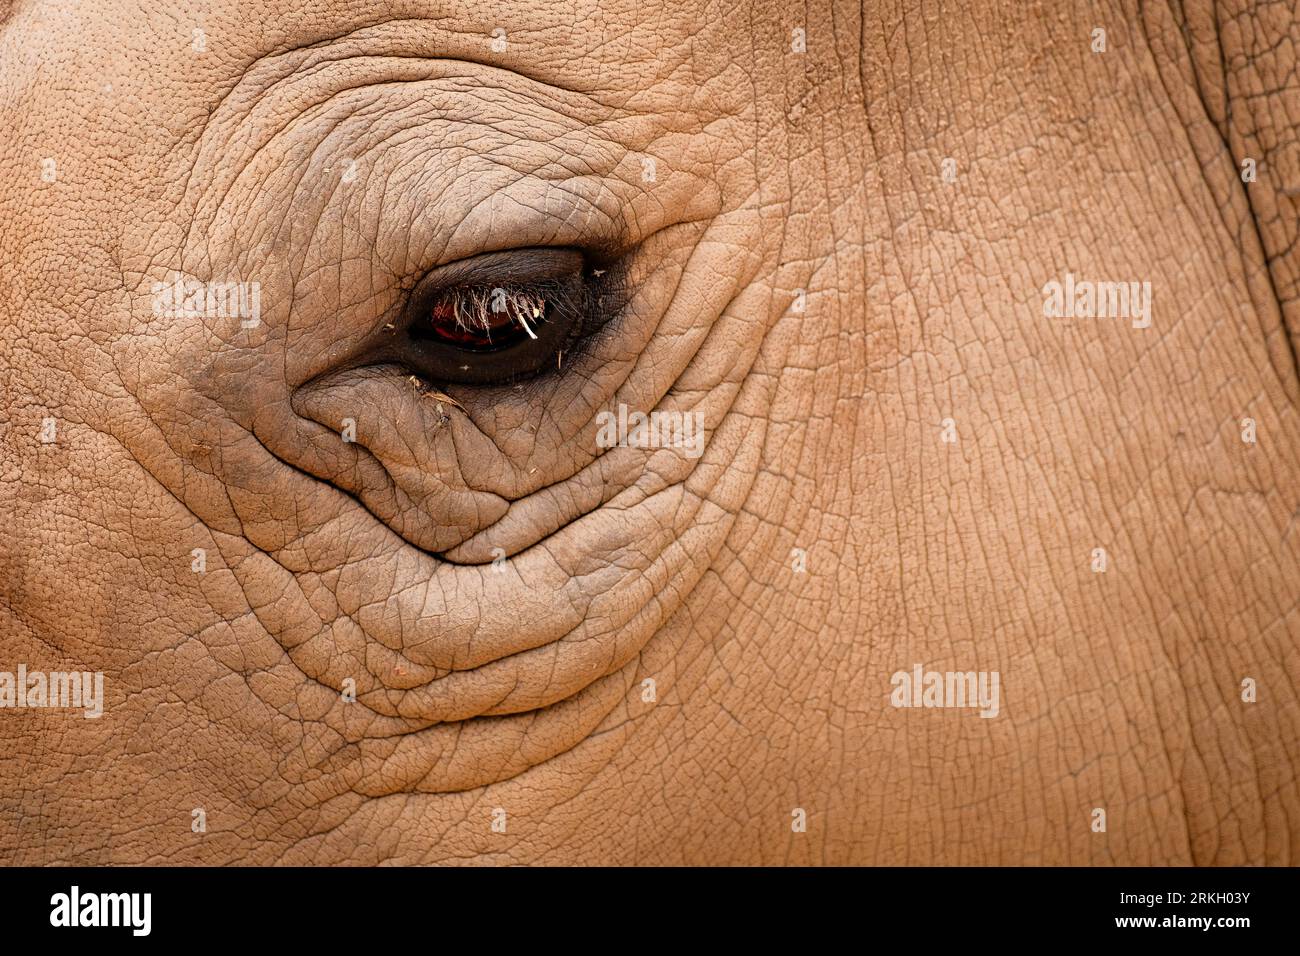 Peau épaisse et œil pénétrant de rhinocéros Banque D'Images